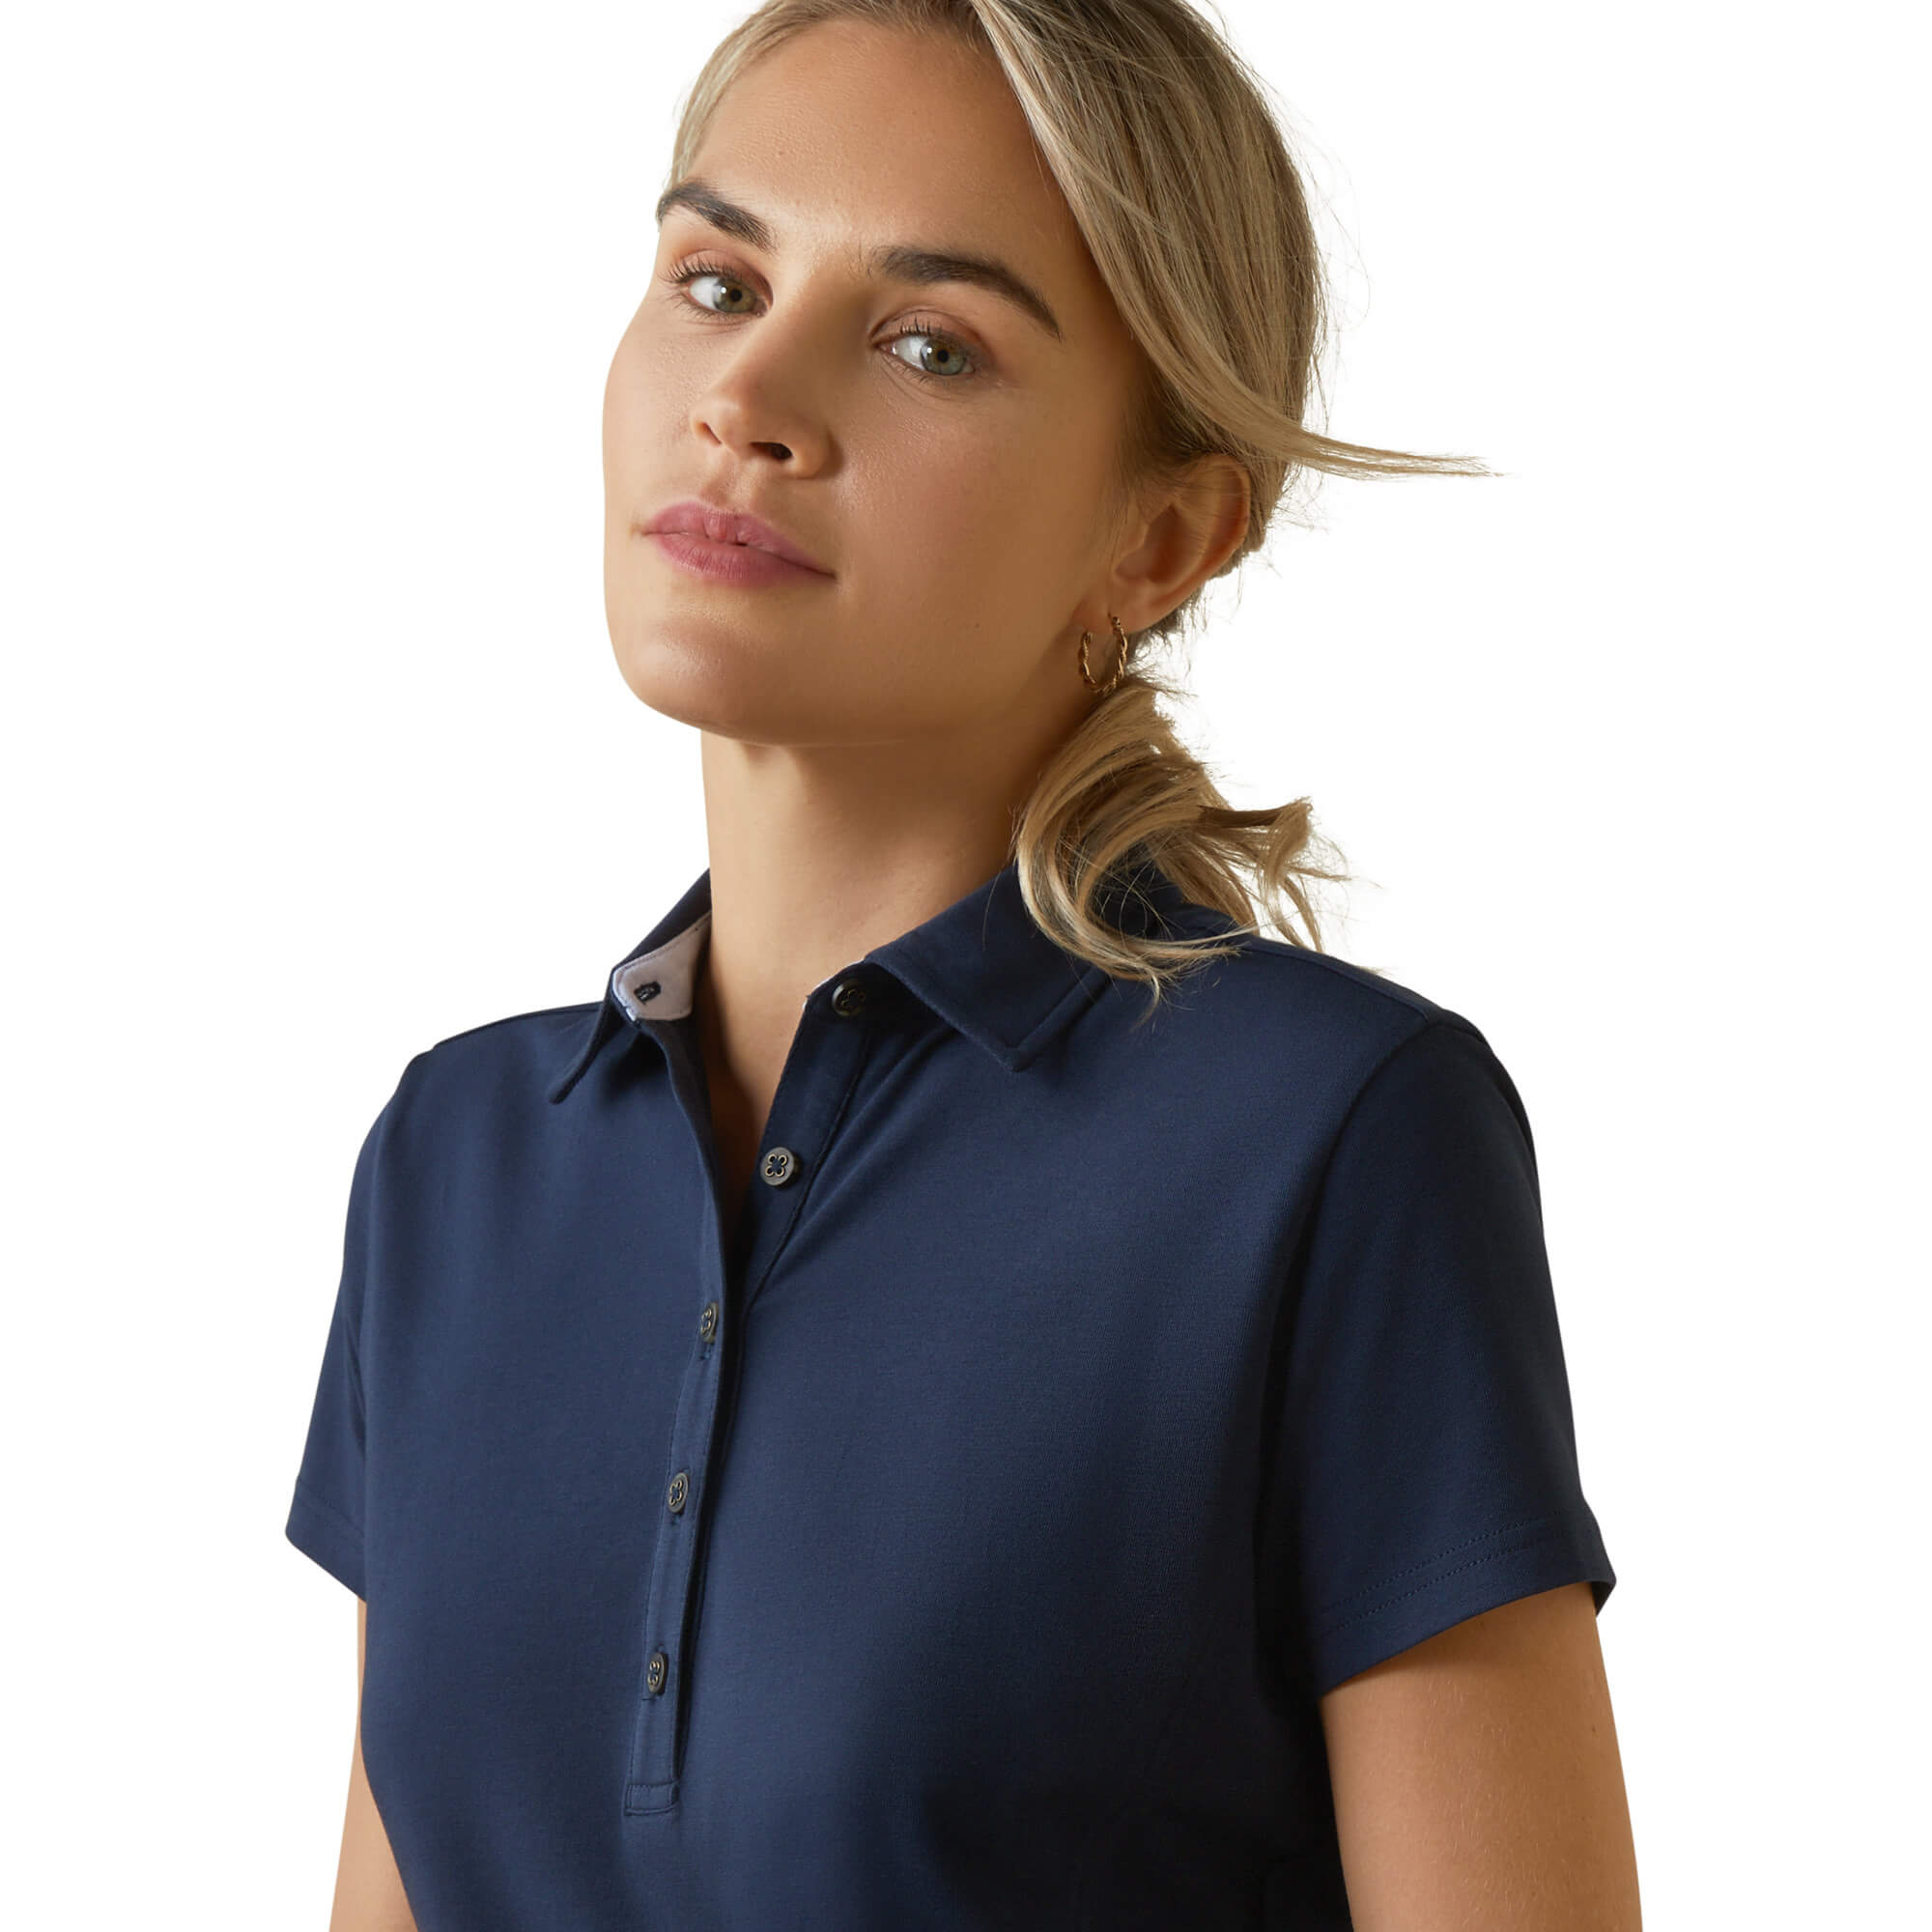 ARIAT klassisch schickes Damen Polo Shirt Cloverdale - navy - L - 3